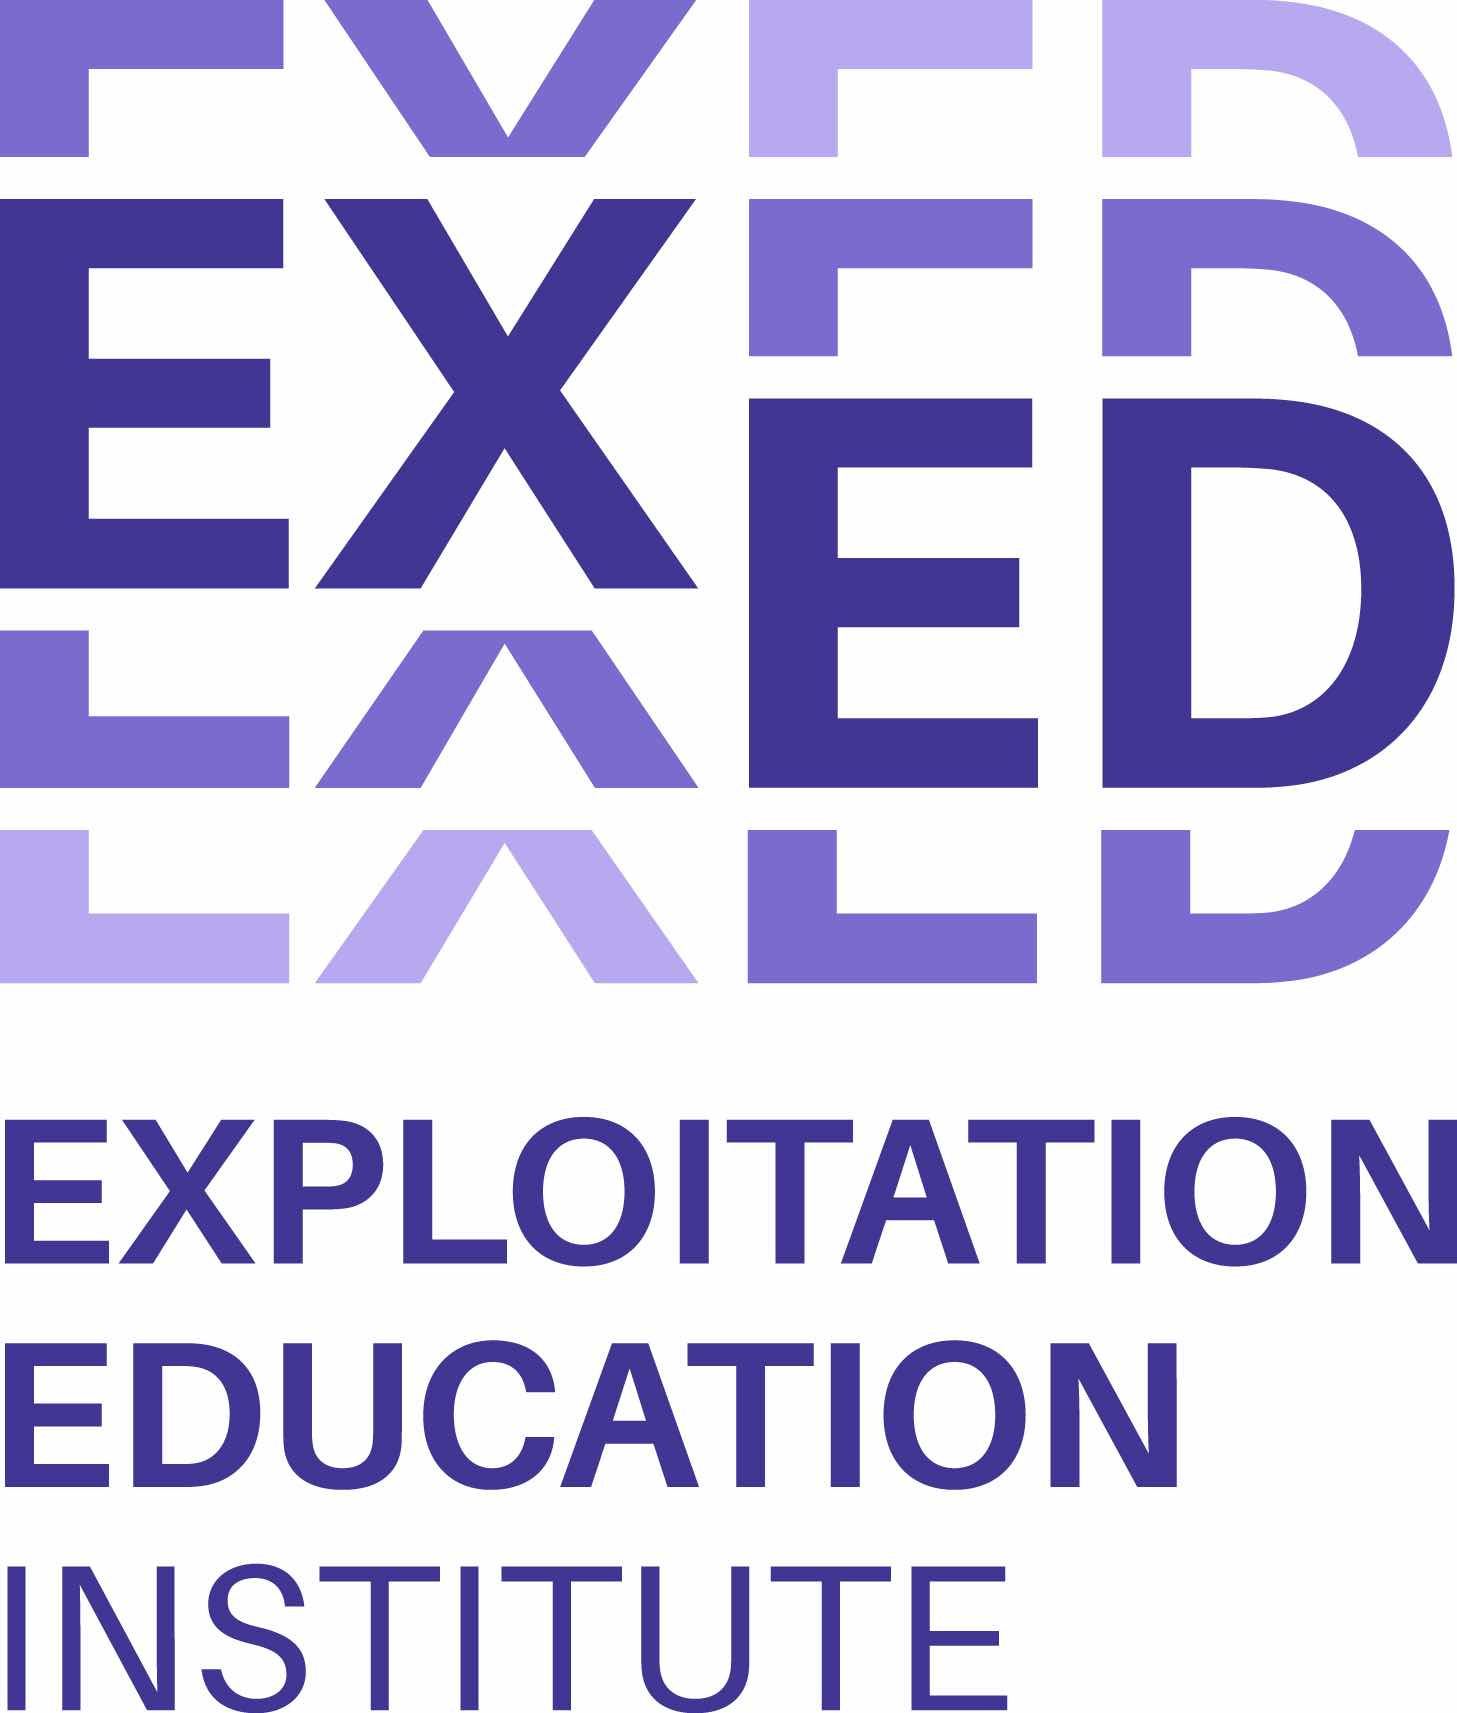 Exploitation Education Logo